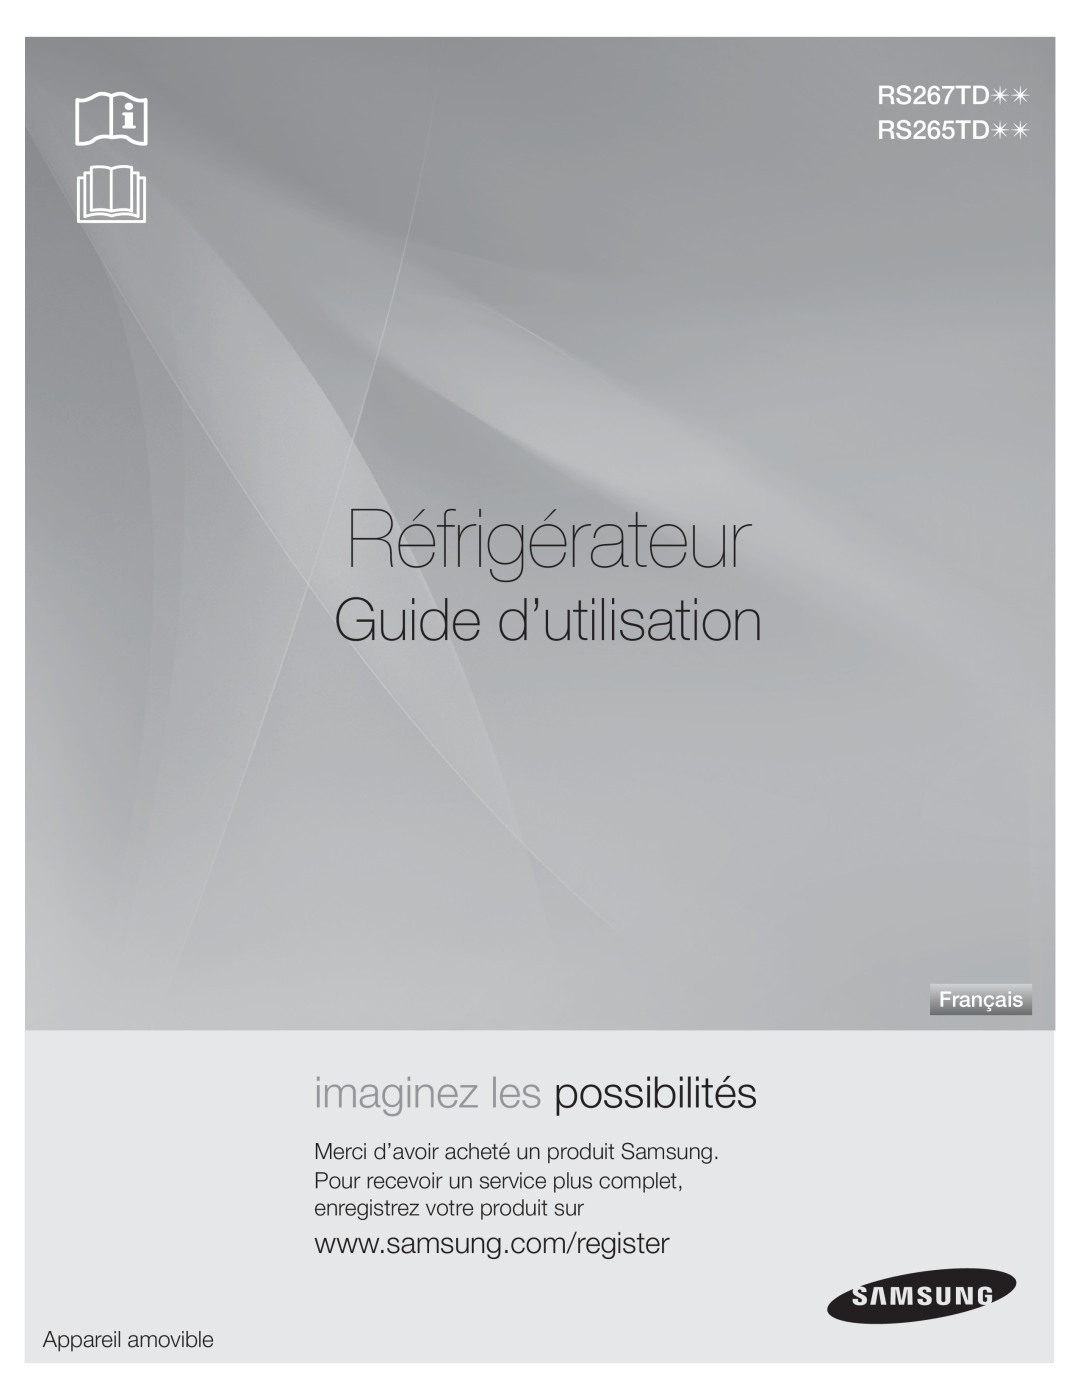 Samsung DA68-01890Q Réfrigérateur, Guide d’utilisation, RS267TD77 RS265TD77, imaginez les possibilités, Français 